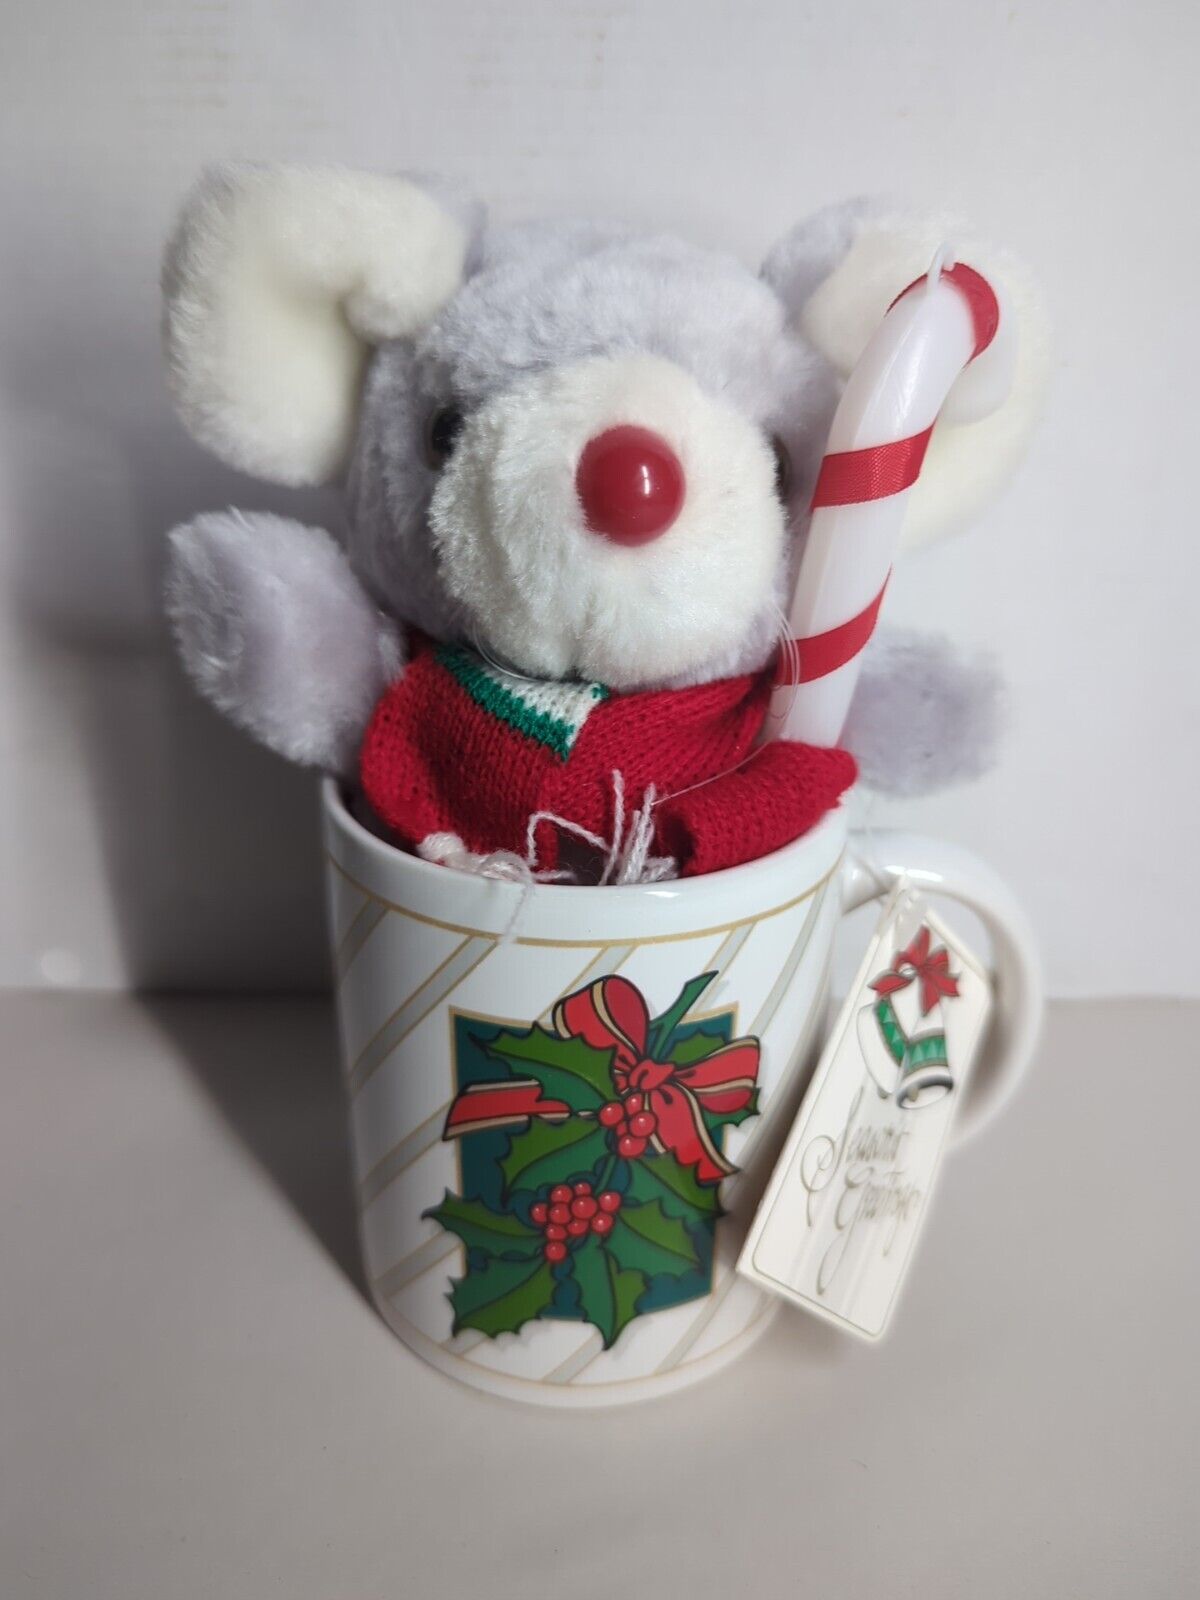 Vtg 1991/92 Holiday Mouse Stuffed Plush Christmas Cuddly Mug With Candy Cane